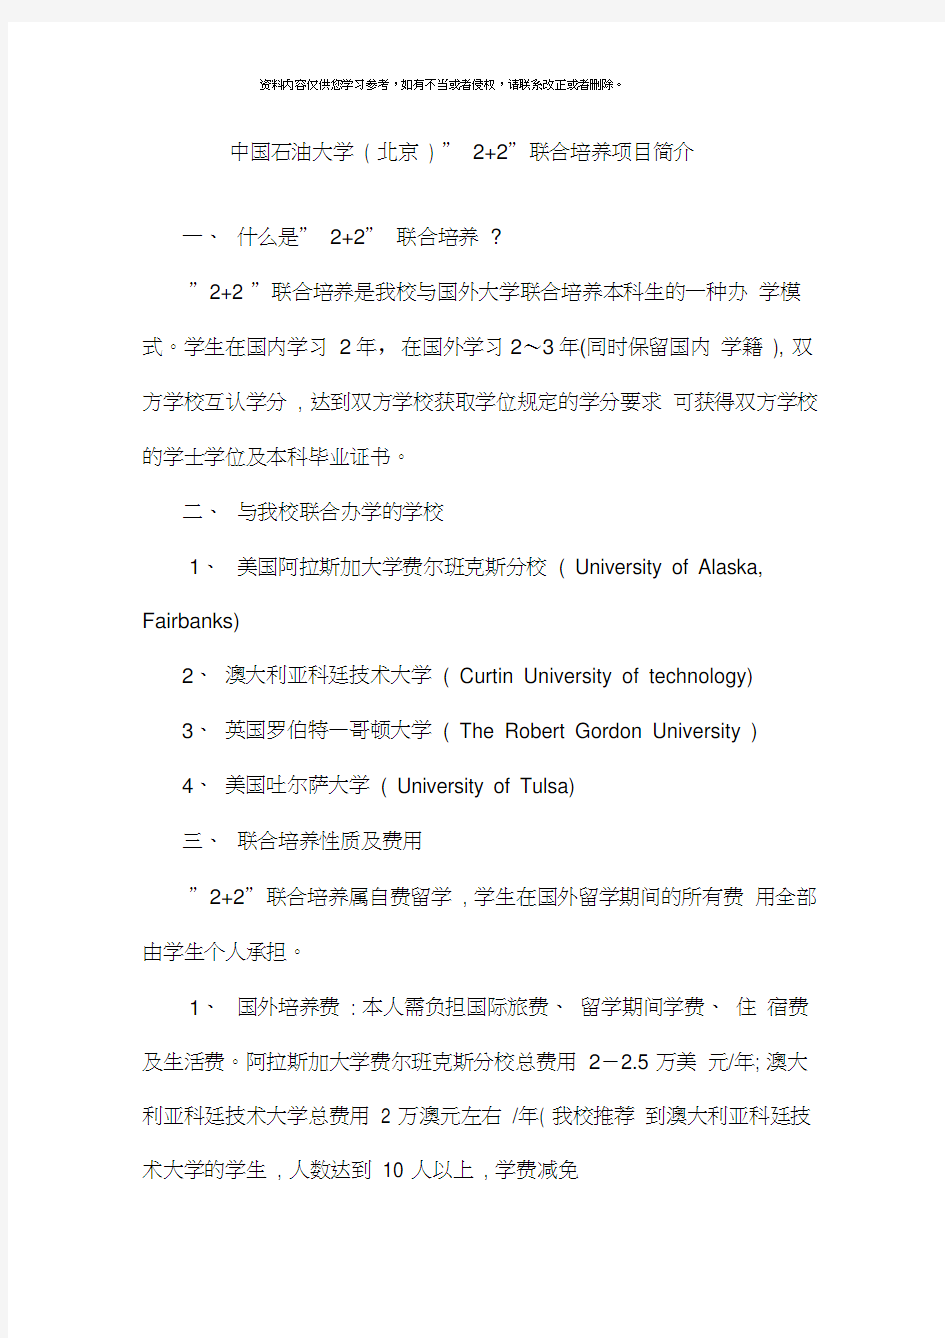 中国石油大学北京联合培养项目简介模板